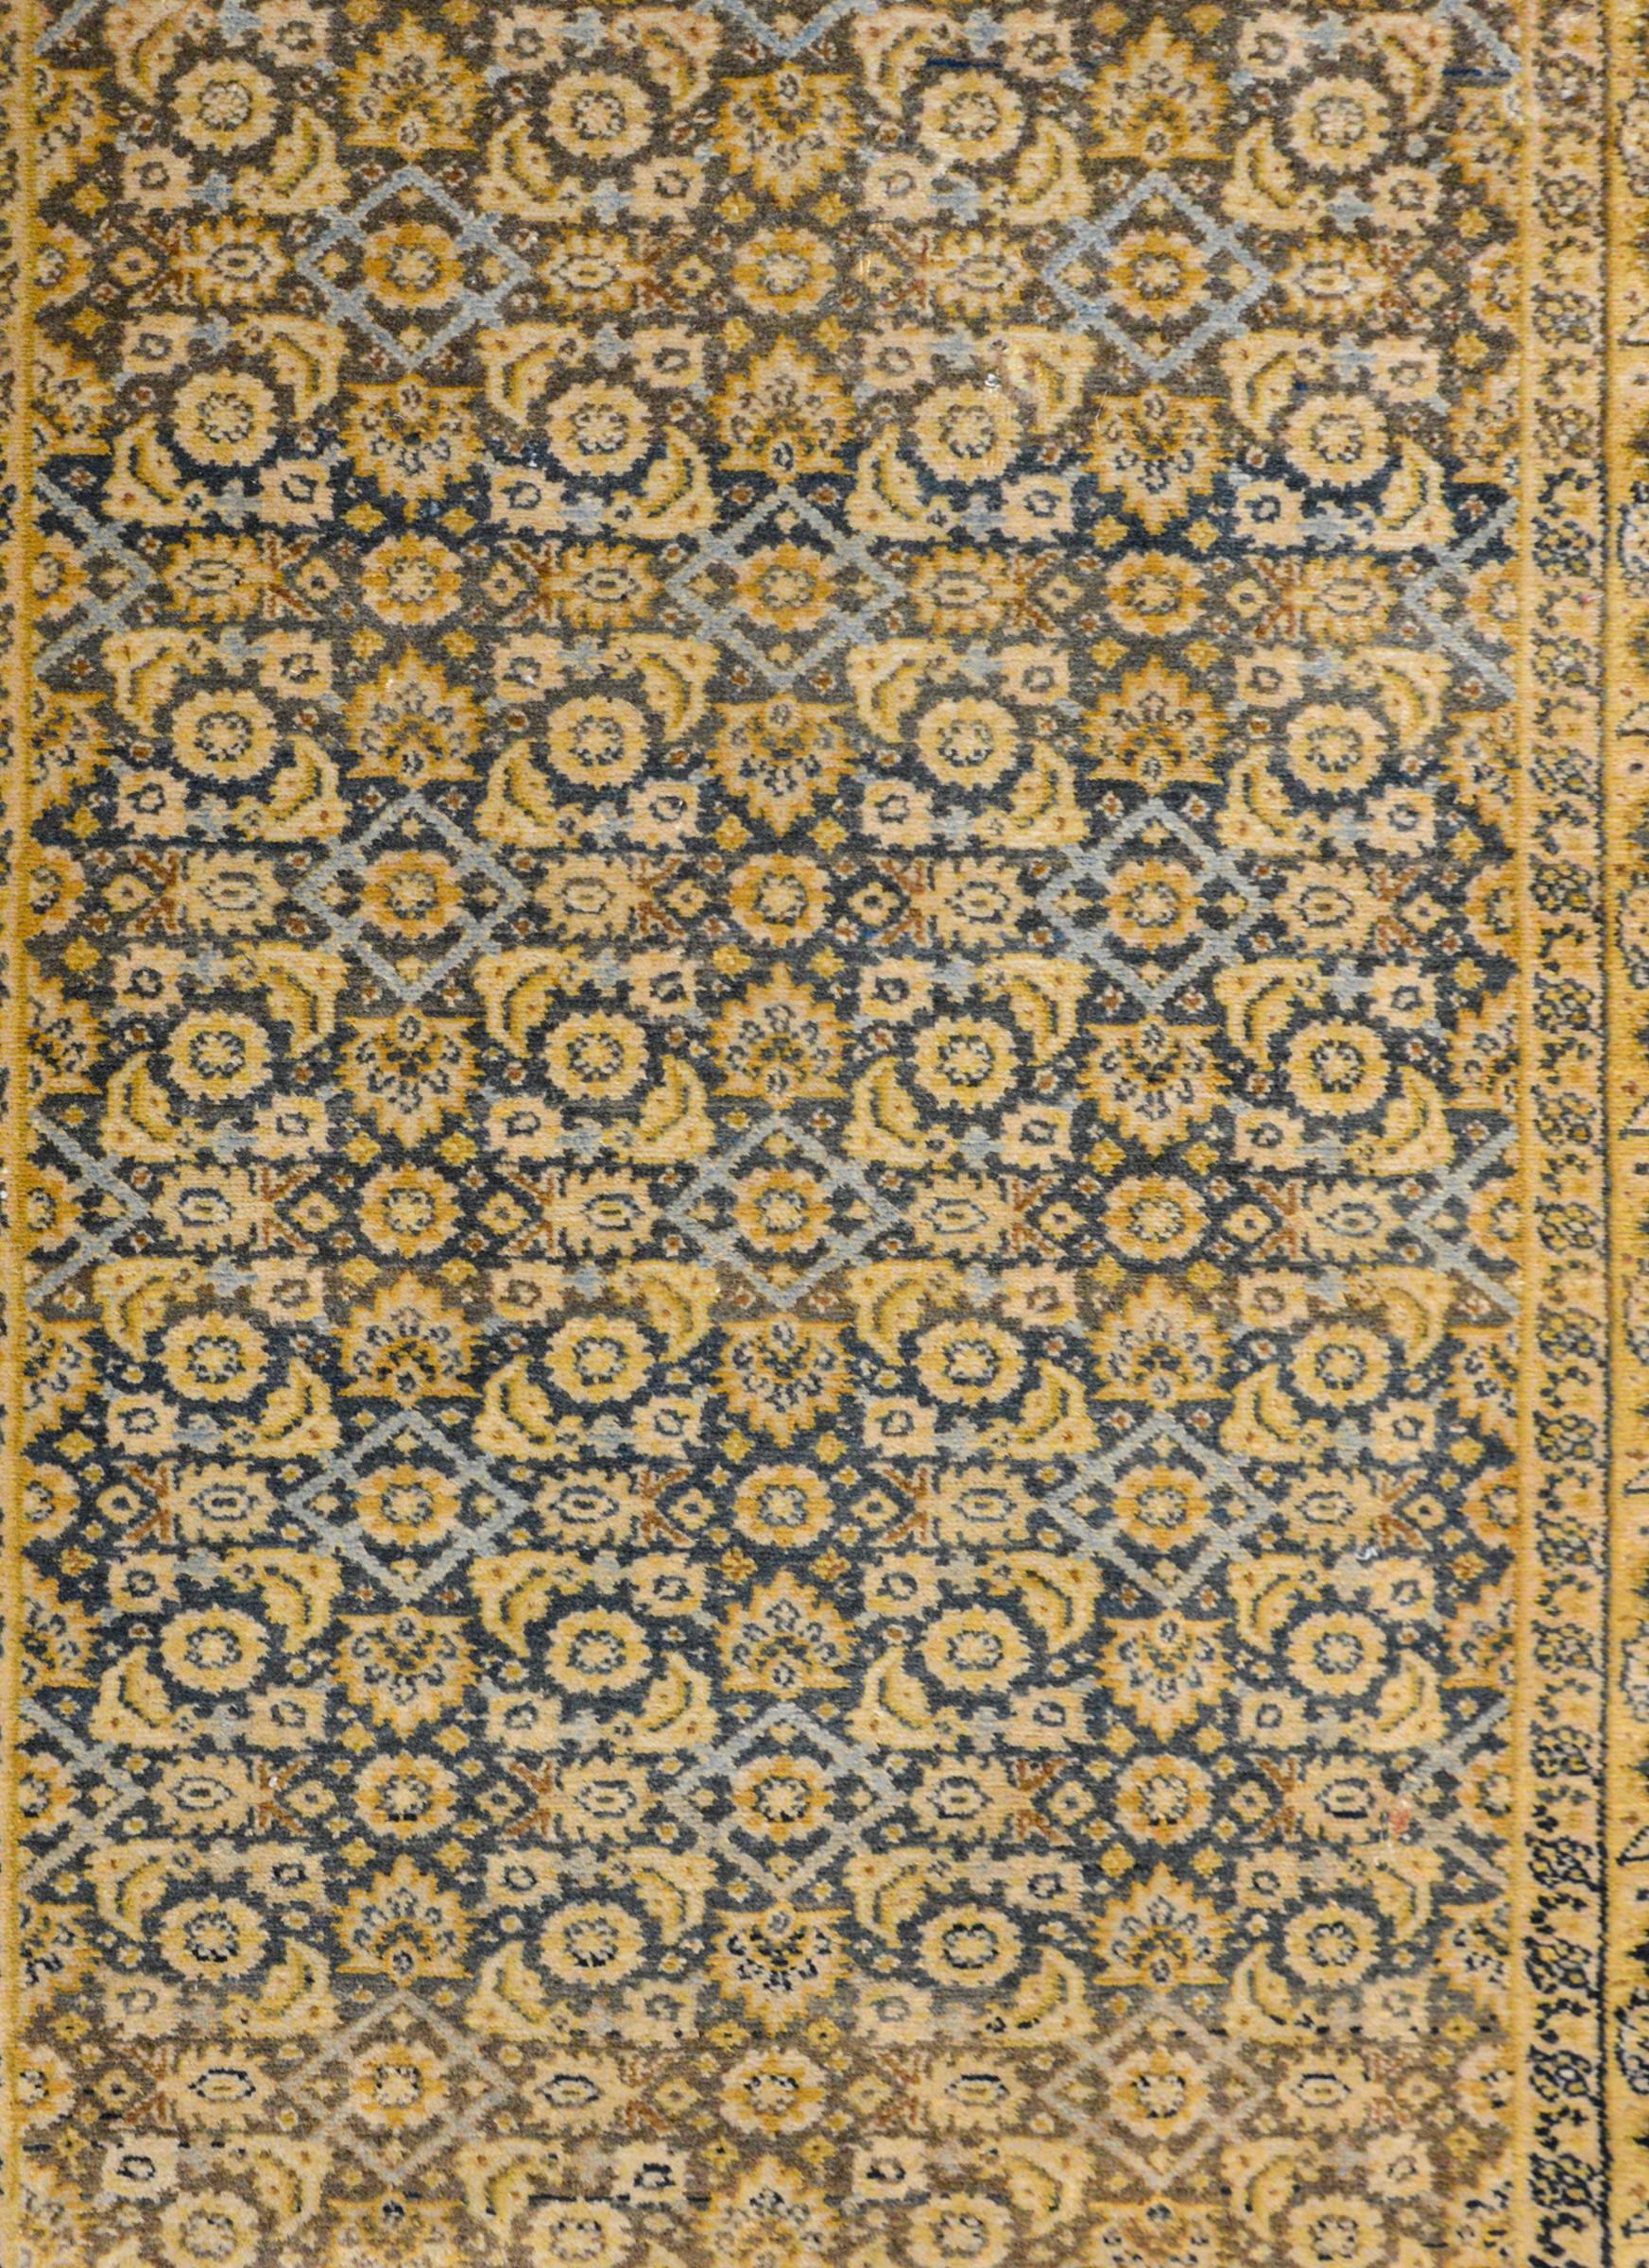 Ein schöner persischer Senneh-Teppich aus dem frühen 20. Jahrhundert mit einem Allover-Spaliermuster aus Blumen und Blättern in Gold, Creme und hellem Indigo auf einem dunklen indigoblauen Hintergrund. Die Bordüre ist breit mit einem zentralen